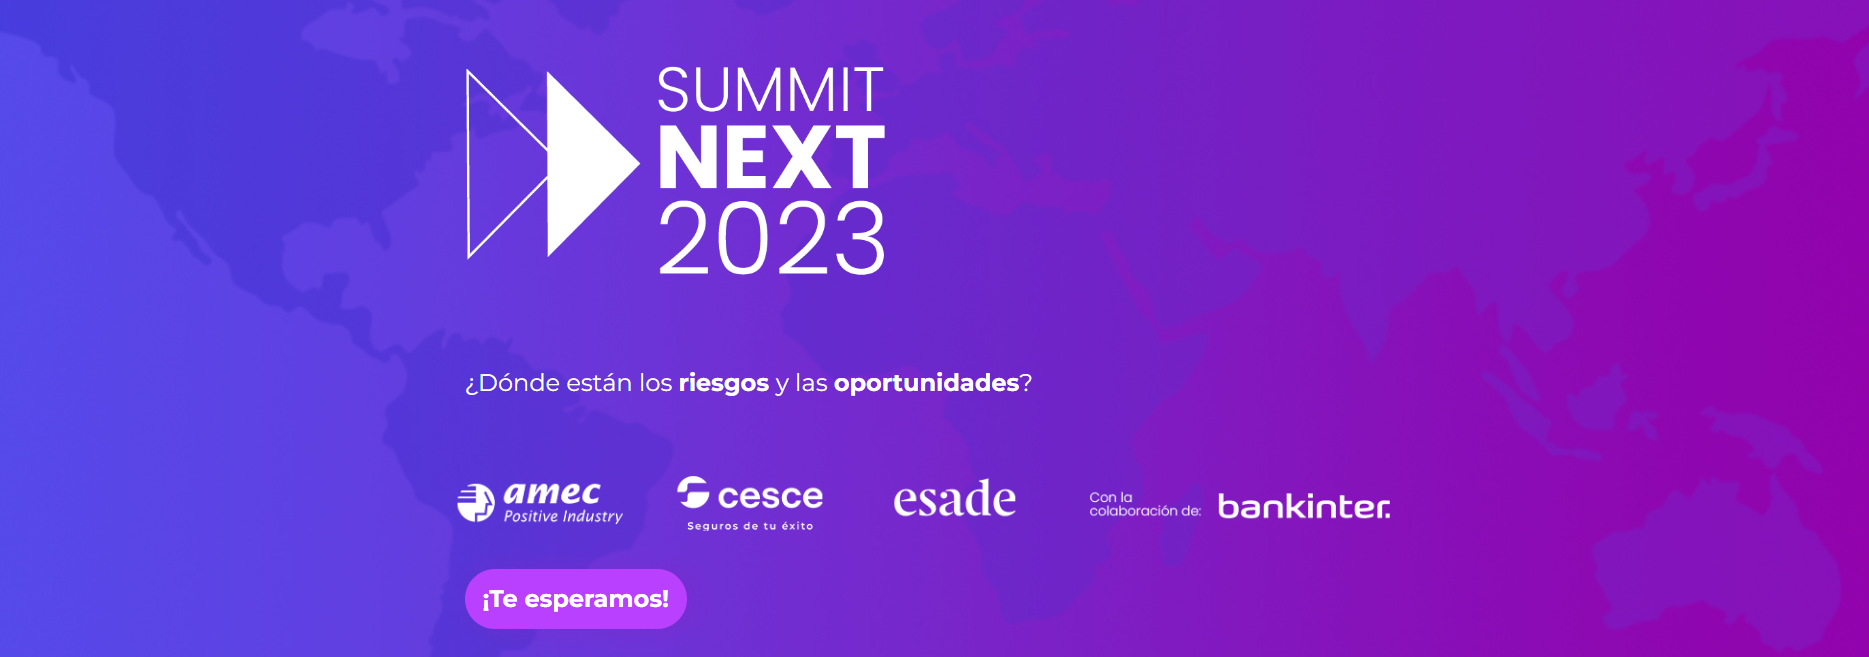 Summit Next 2023